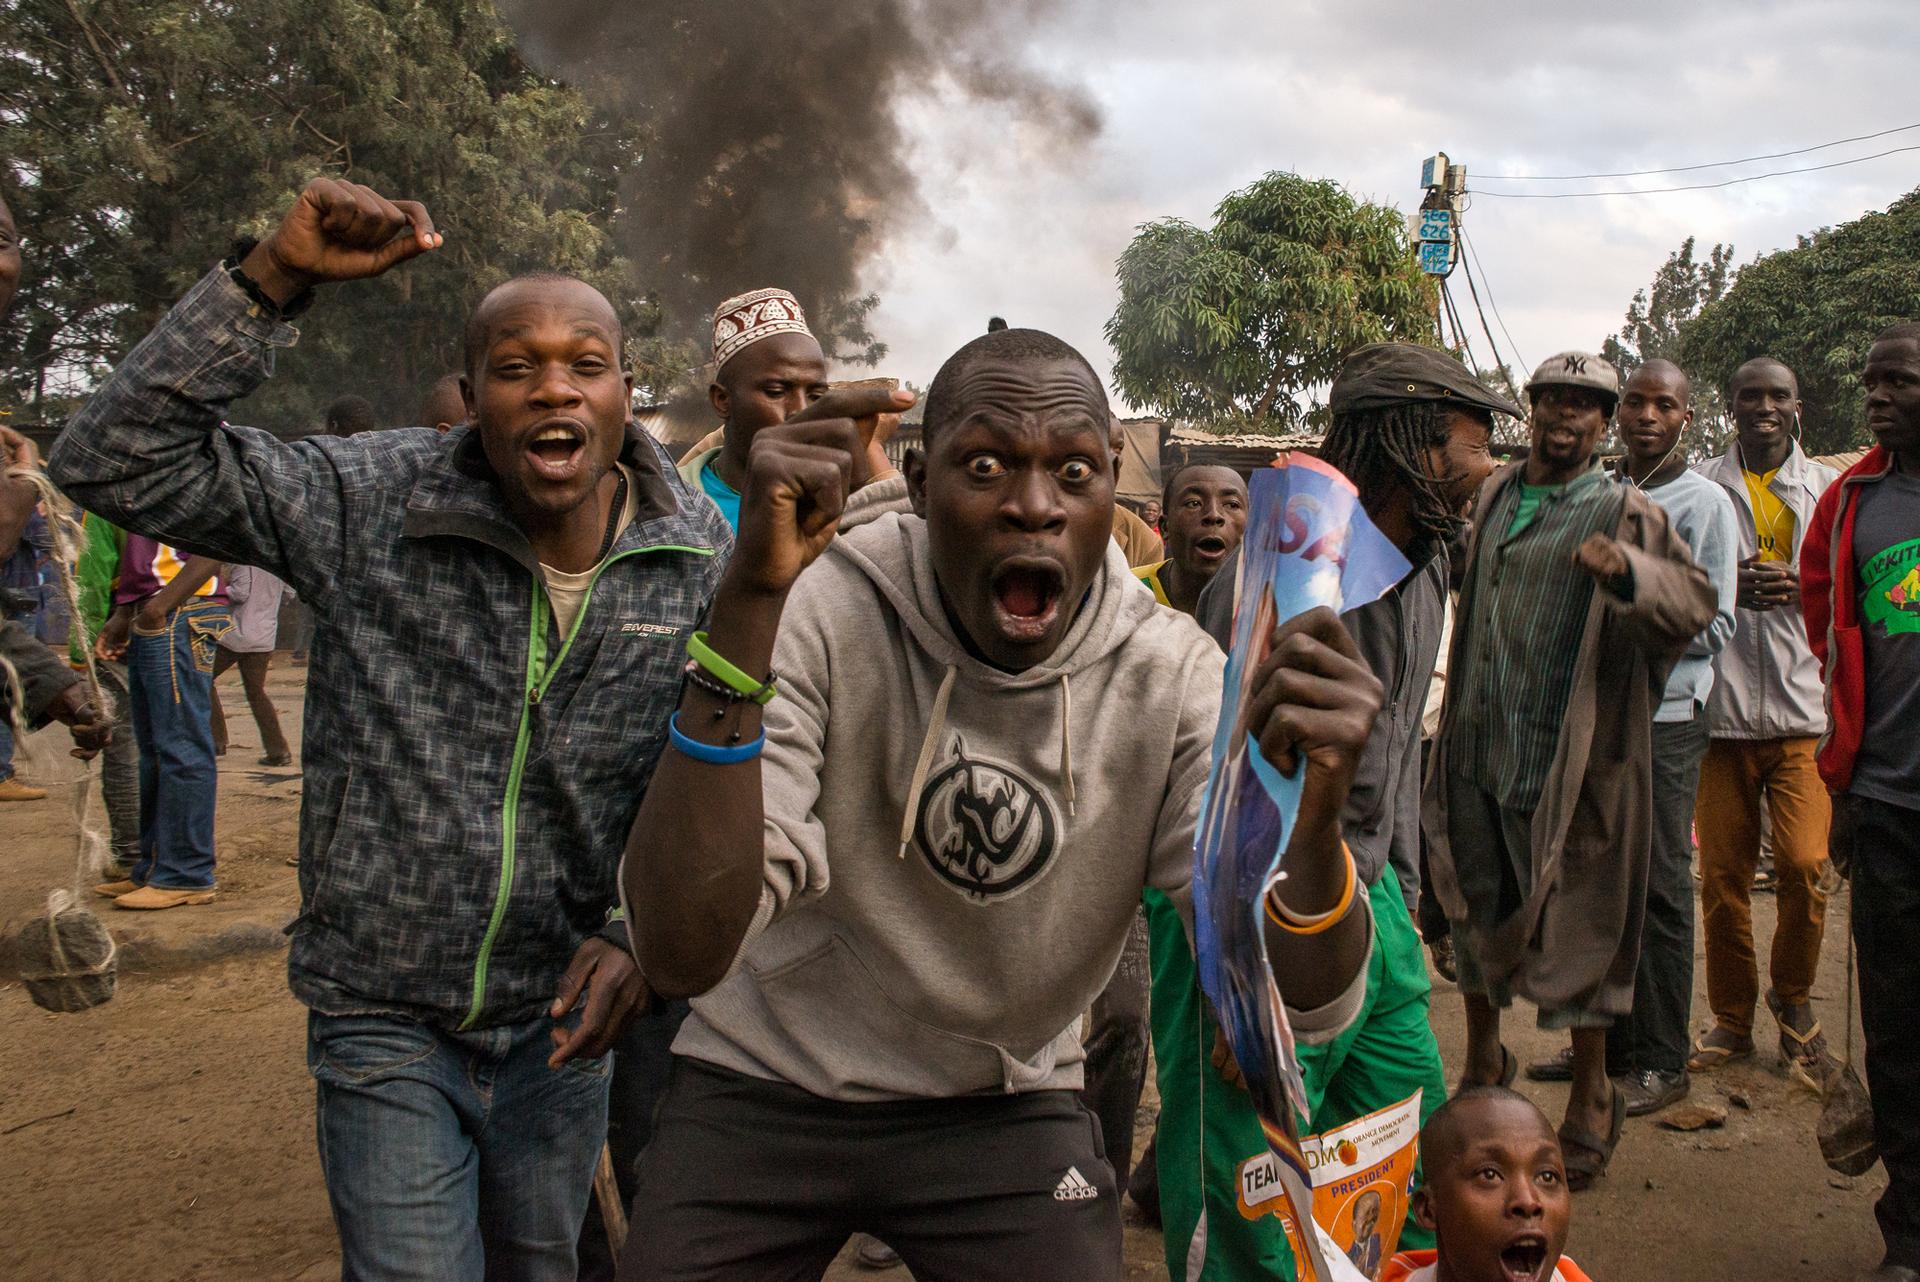 Men yell “Uhuru must go!” during a demonstration in Kibera, an informal settlement of Nairobi, Kenya. Many of the residents support Raila Odinga of the National Super Alliance over current President Uhuru Kenyatta.